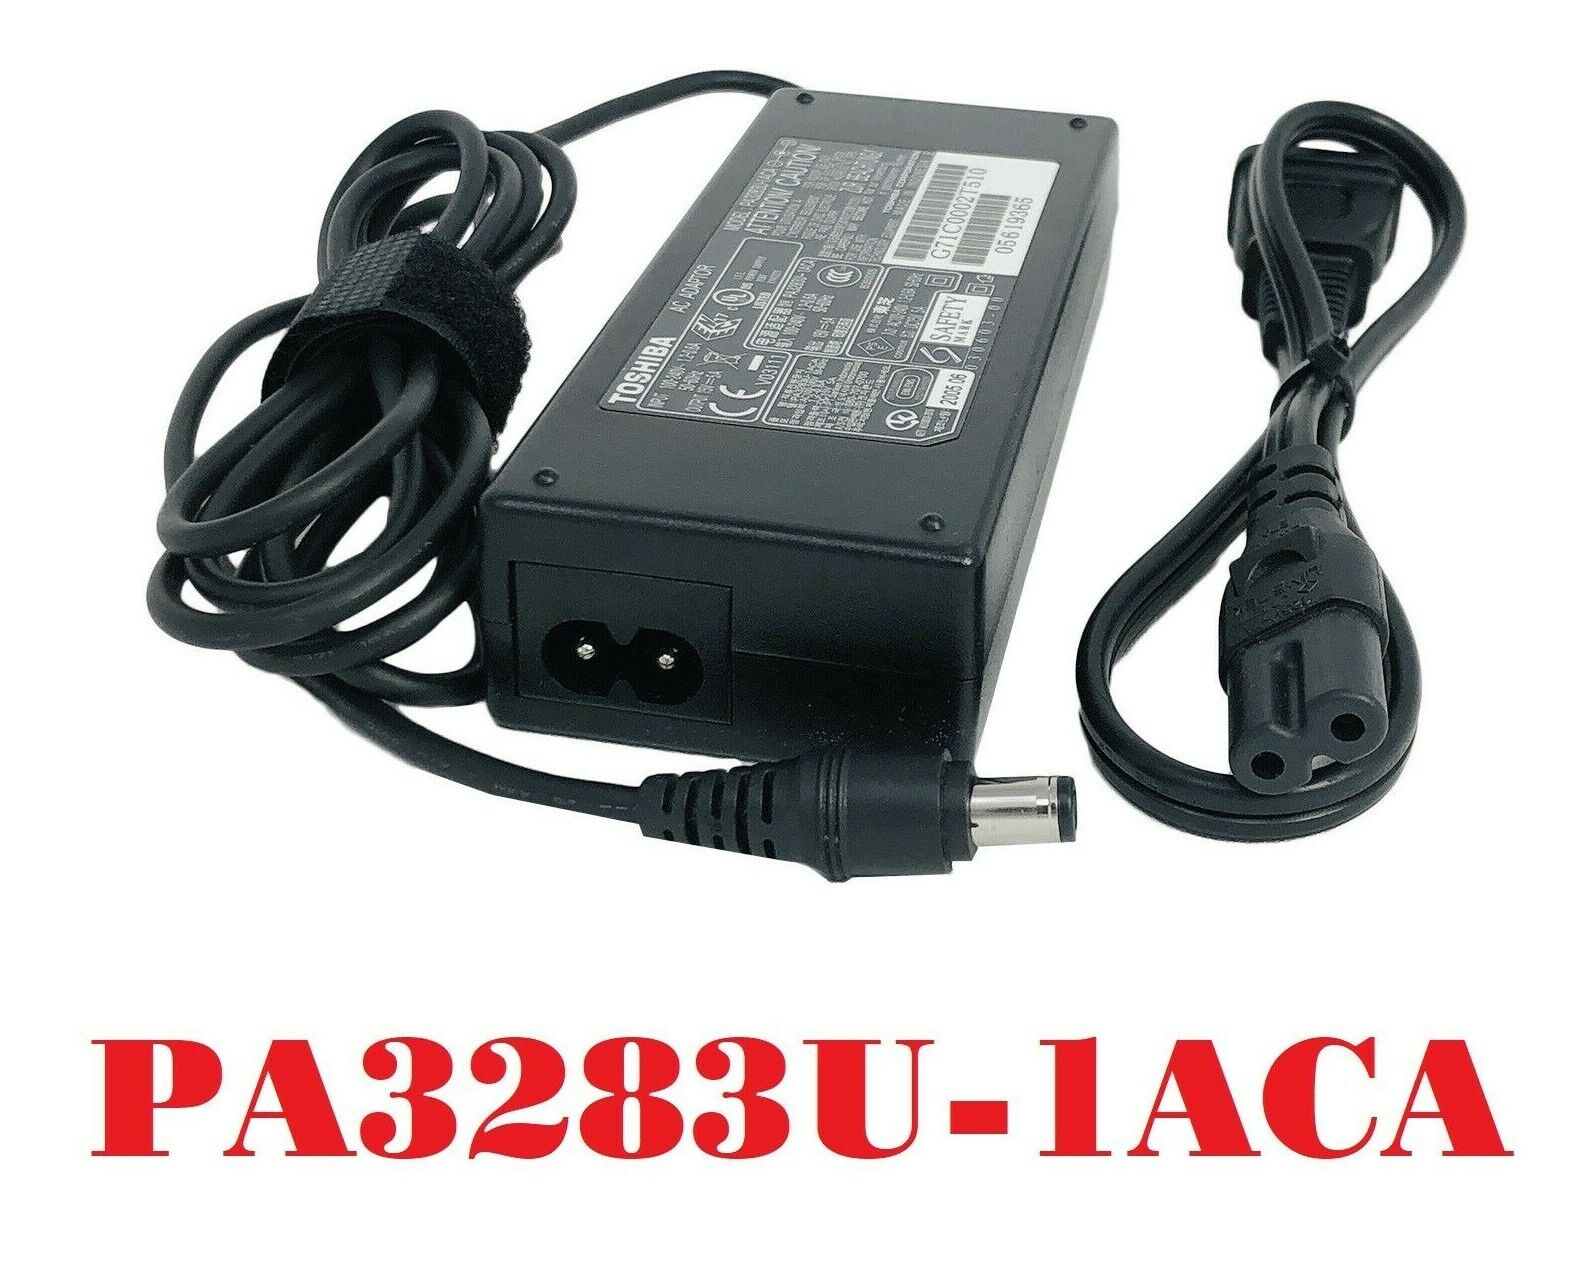 Genuine Toshiba PA3283U-1ACA 75W Laptop AC Power Supply Adapter w/Cord